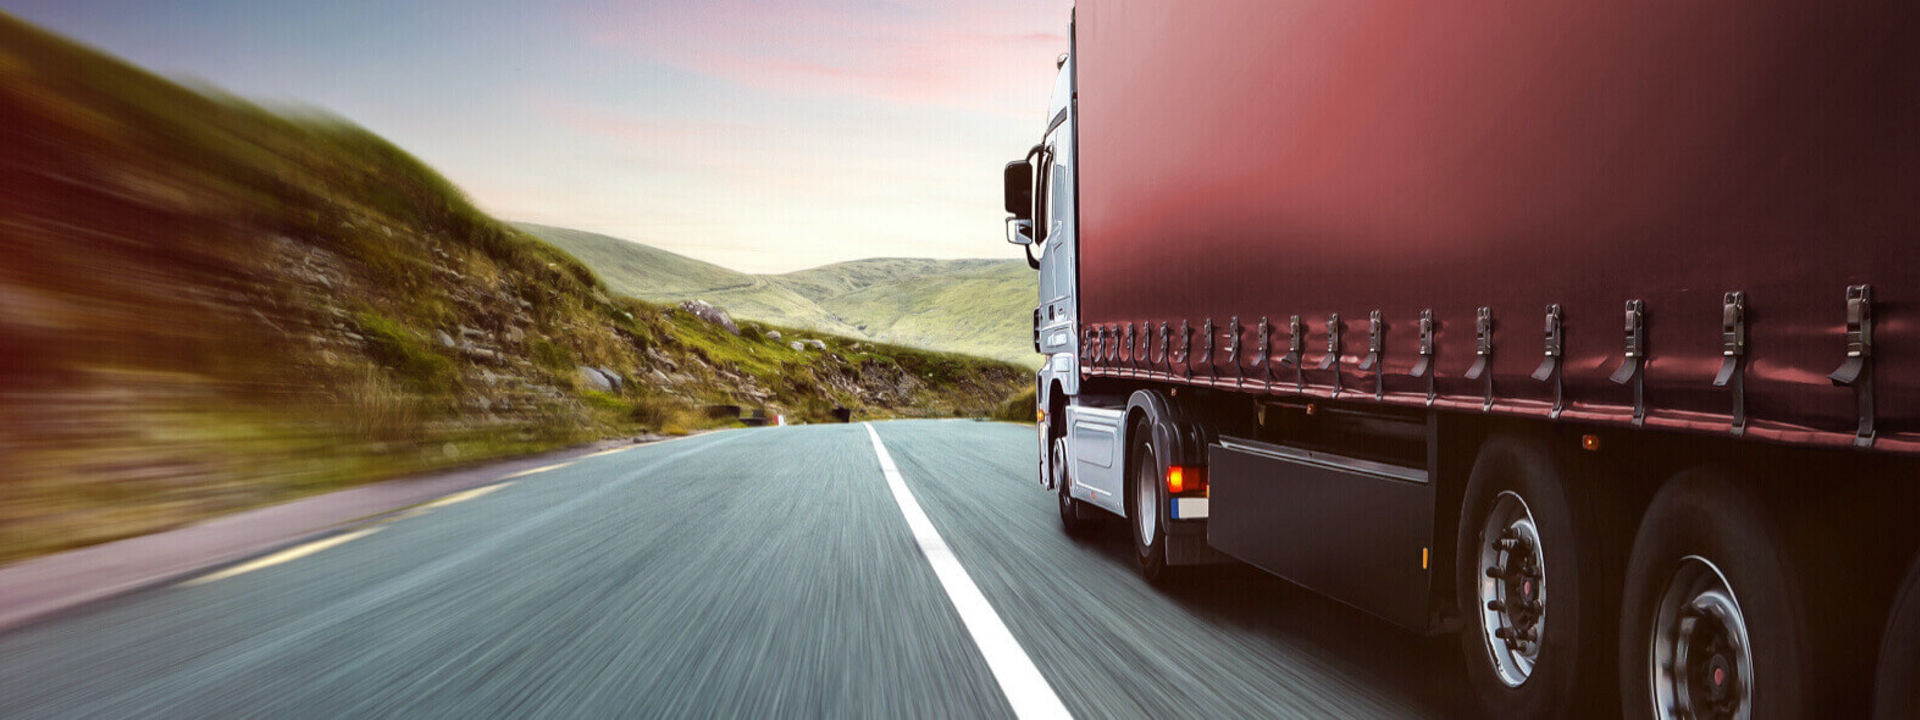 Šioje nuotraukoje matoma komercinė transporto priemonė, važiuojanti keliu su „Bridgestone“ sunkvežimių padangomis, vaizdas iš šono.